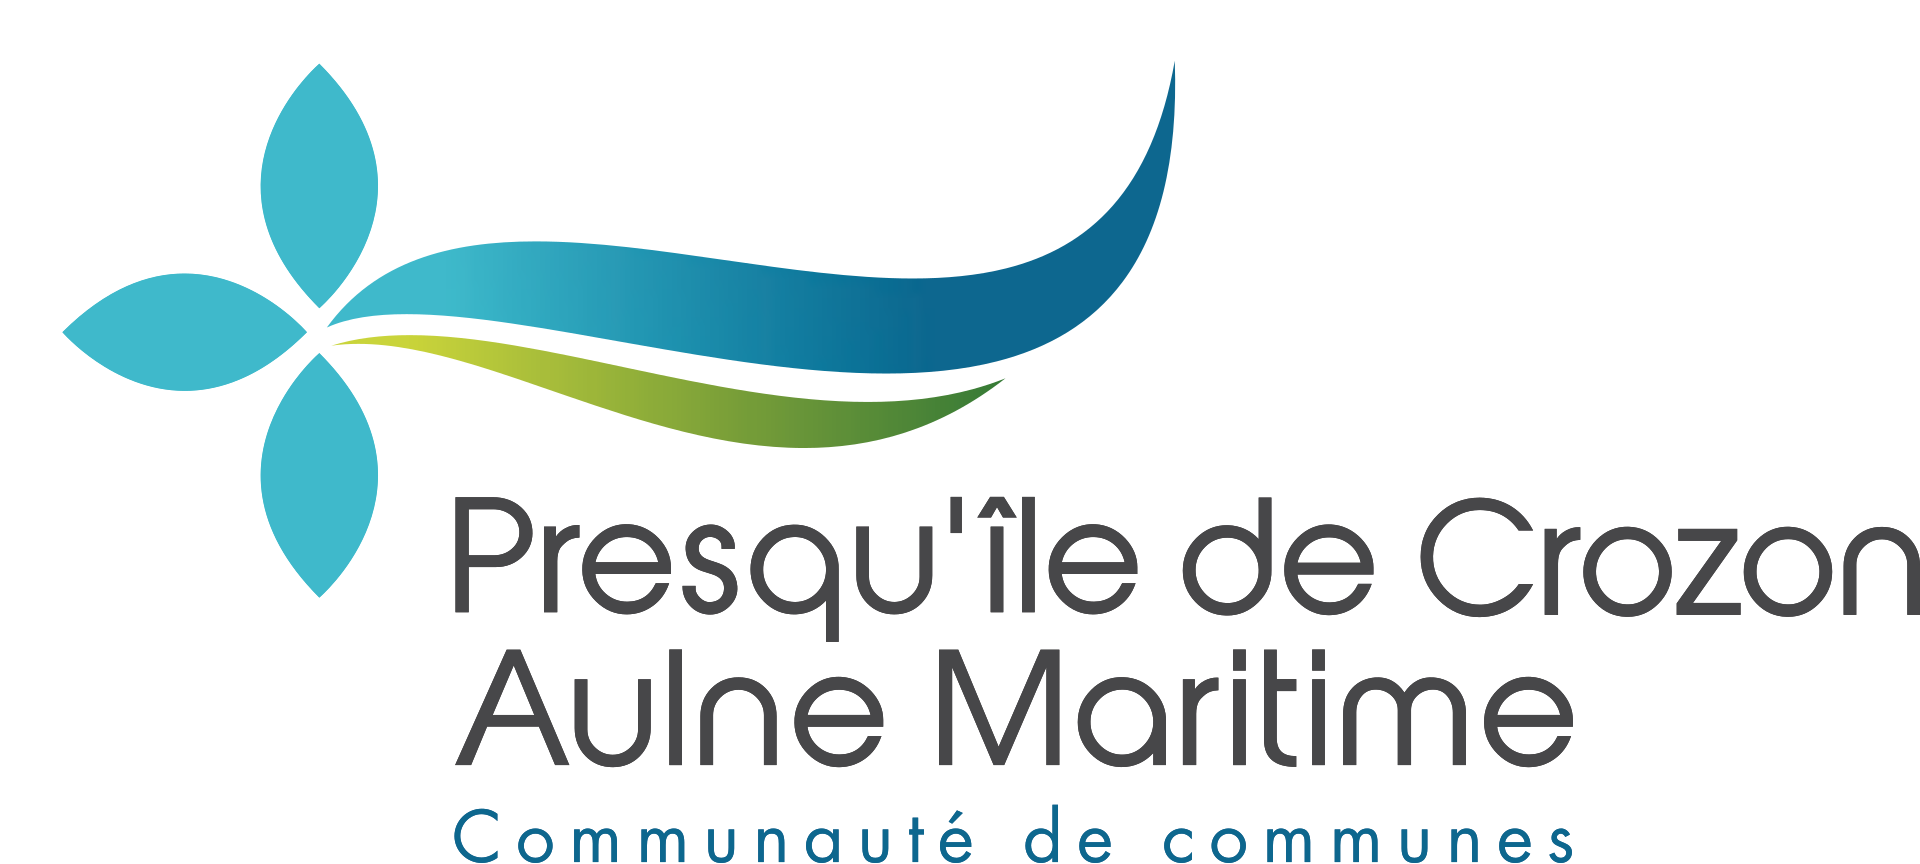 communauté de communes presqu'île de Crozon Aulne Maritime